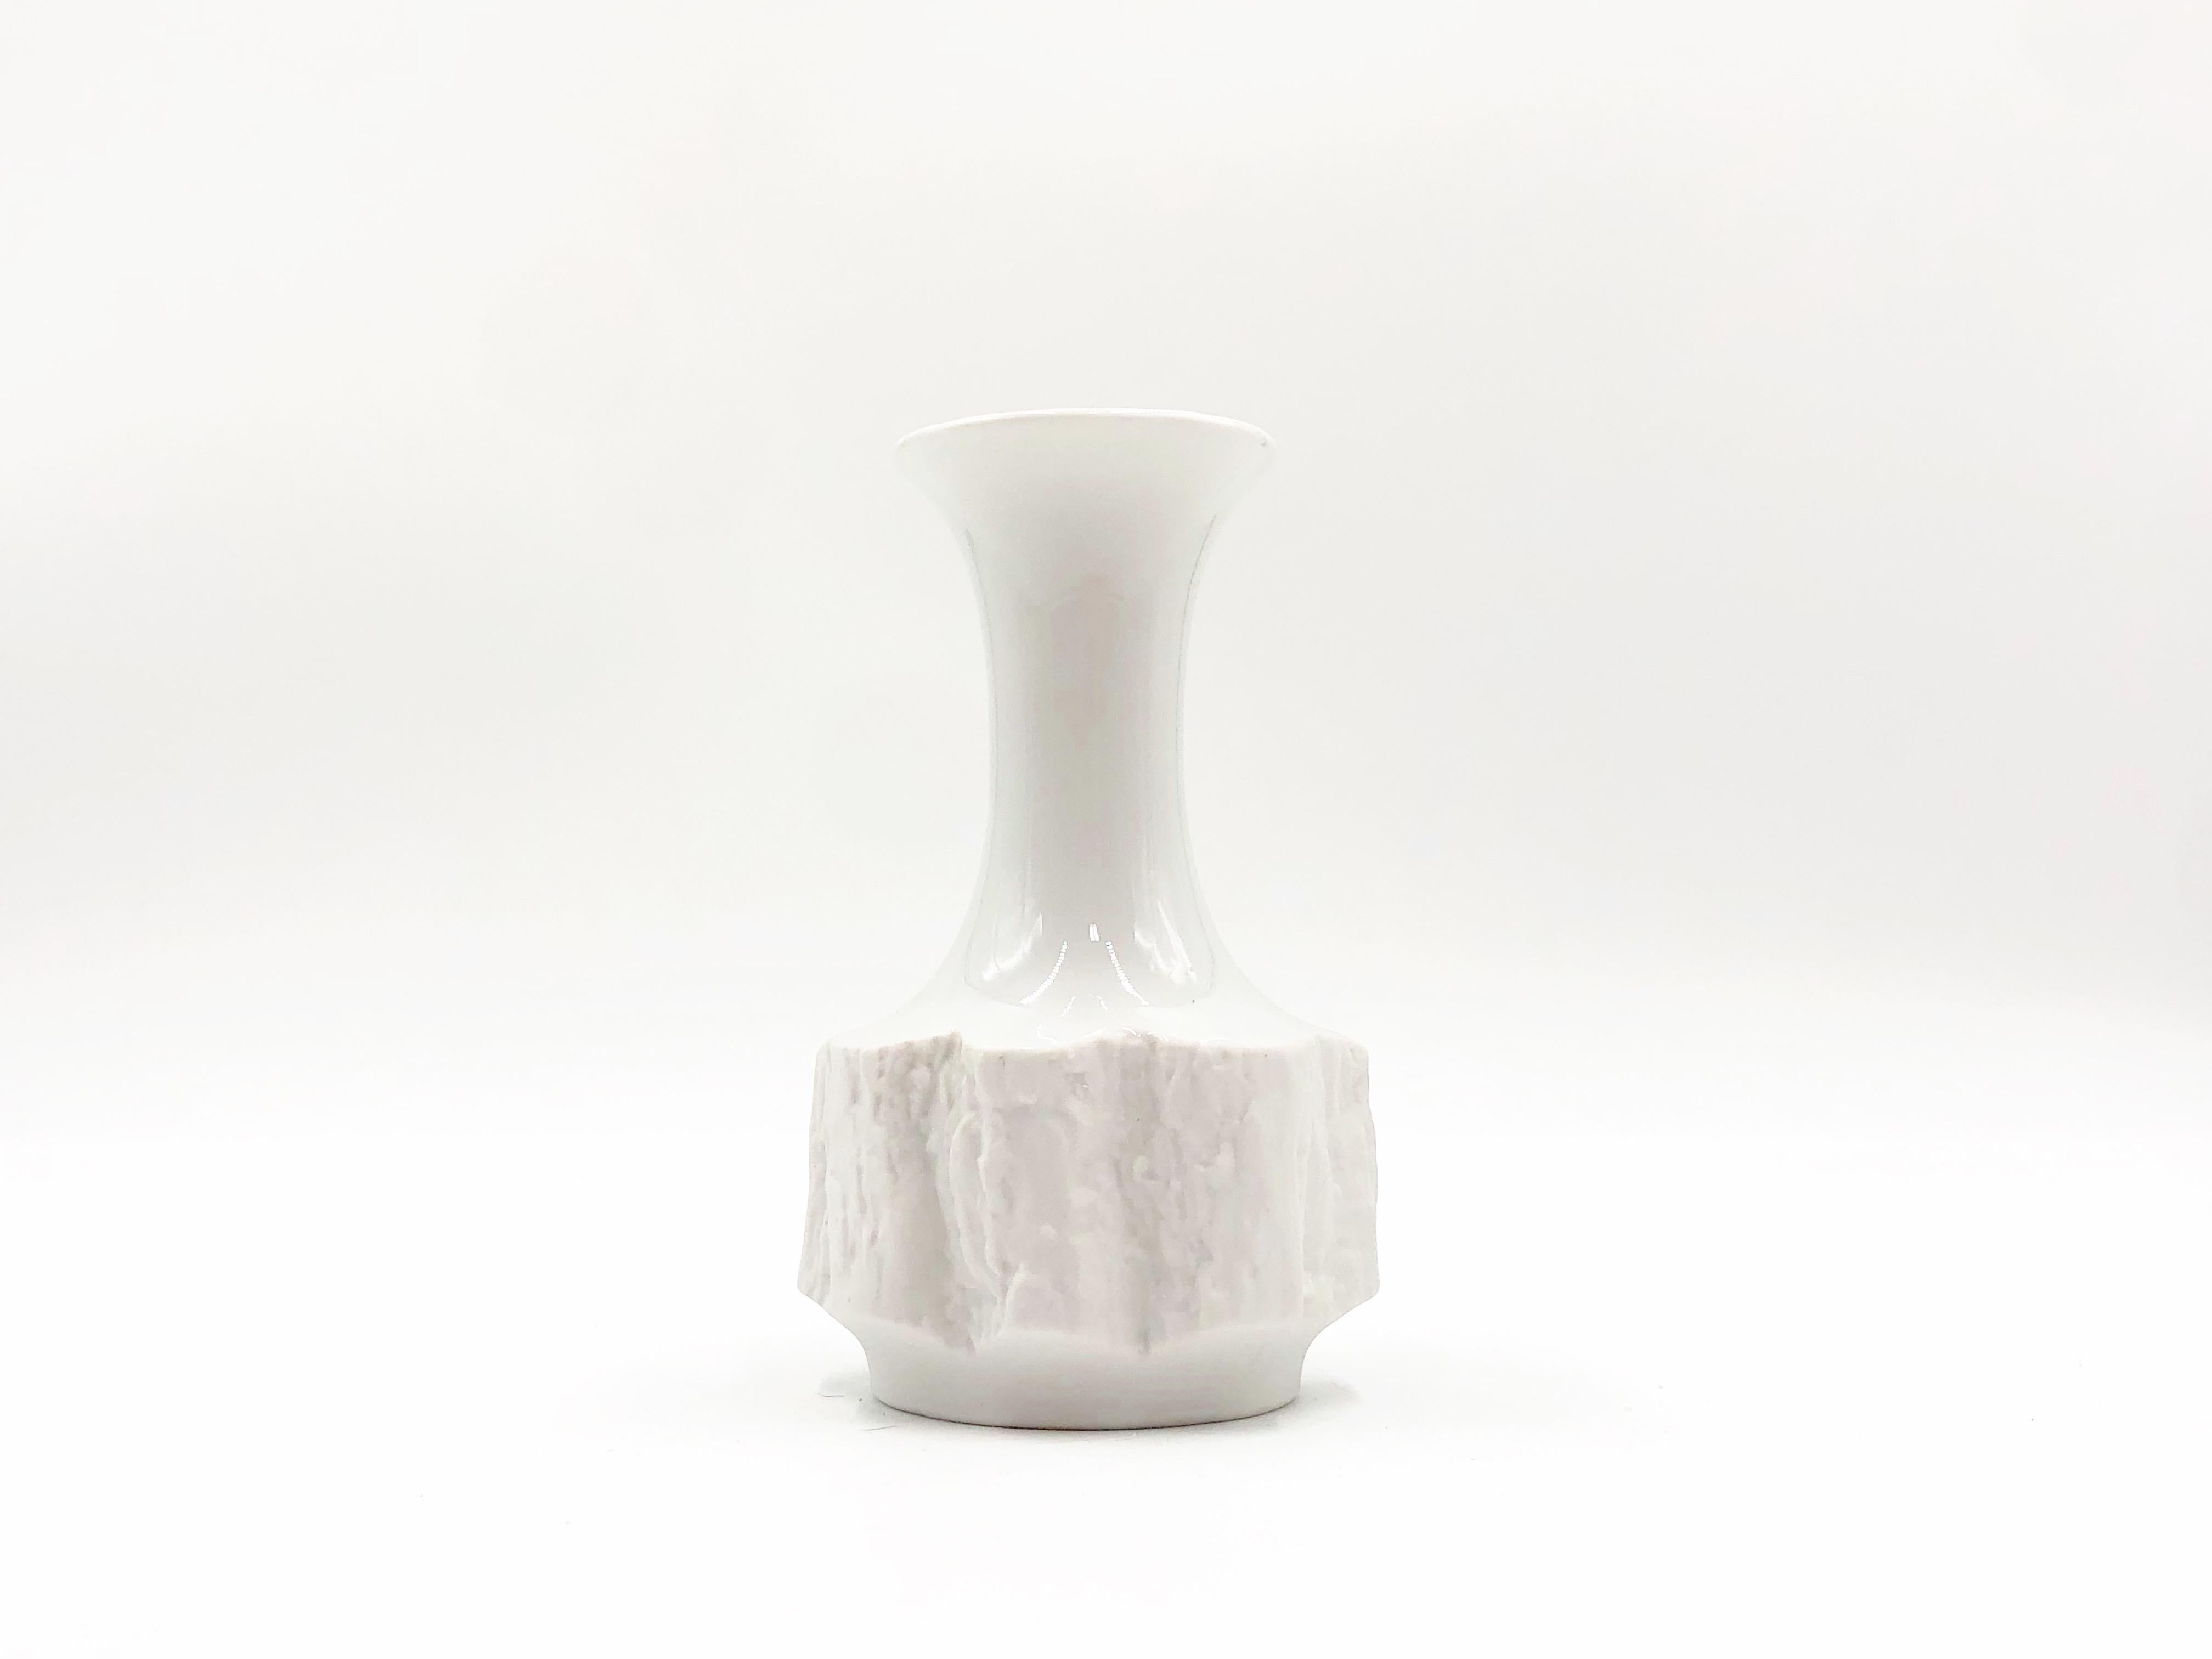 Beautiful vintage fine bone porcelain decorative vase by Bareuther, circa 1970s.

Details:
- 5.5